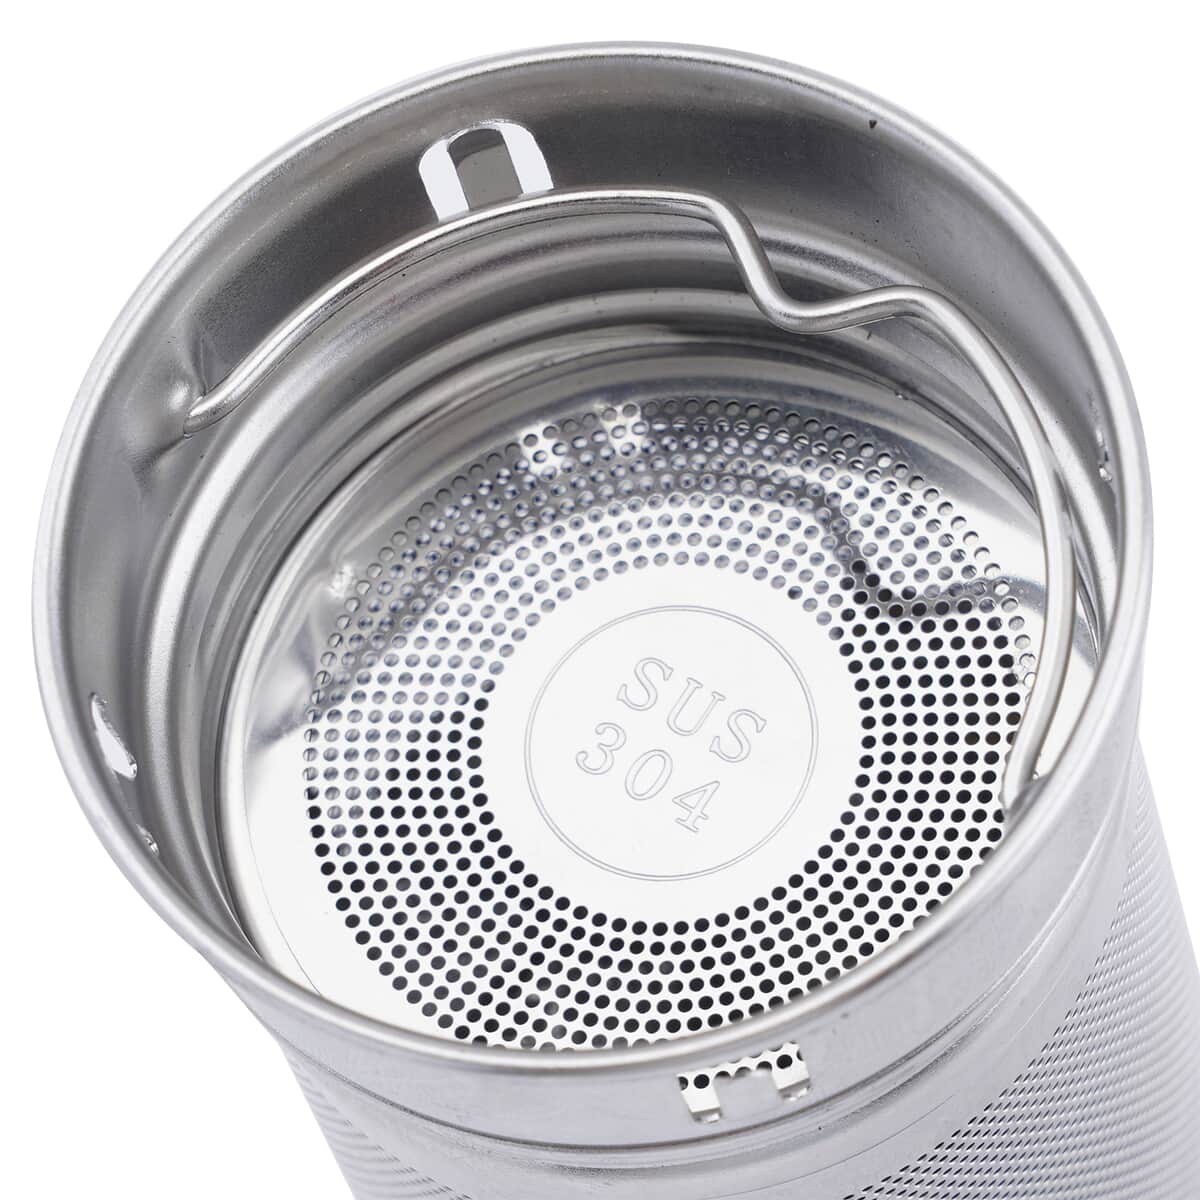 Elite Shungite Filter Infuser and Temperature Sensor Smart Water Bottle (LED Display, Long Filter) - Silver image number 5